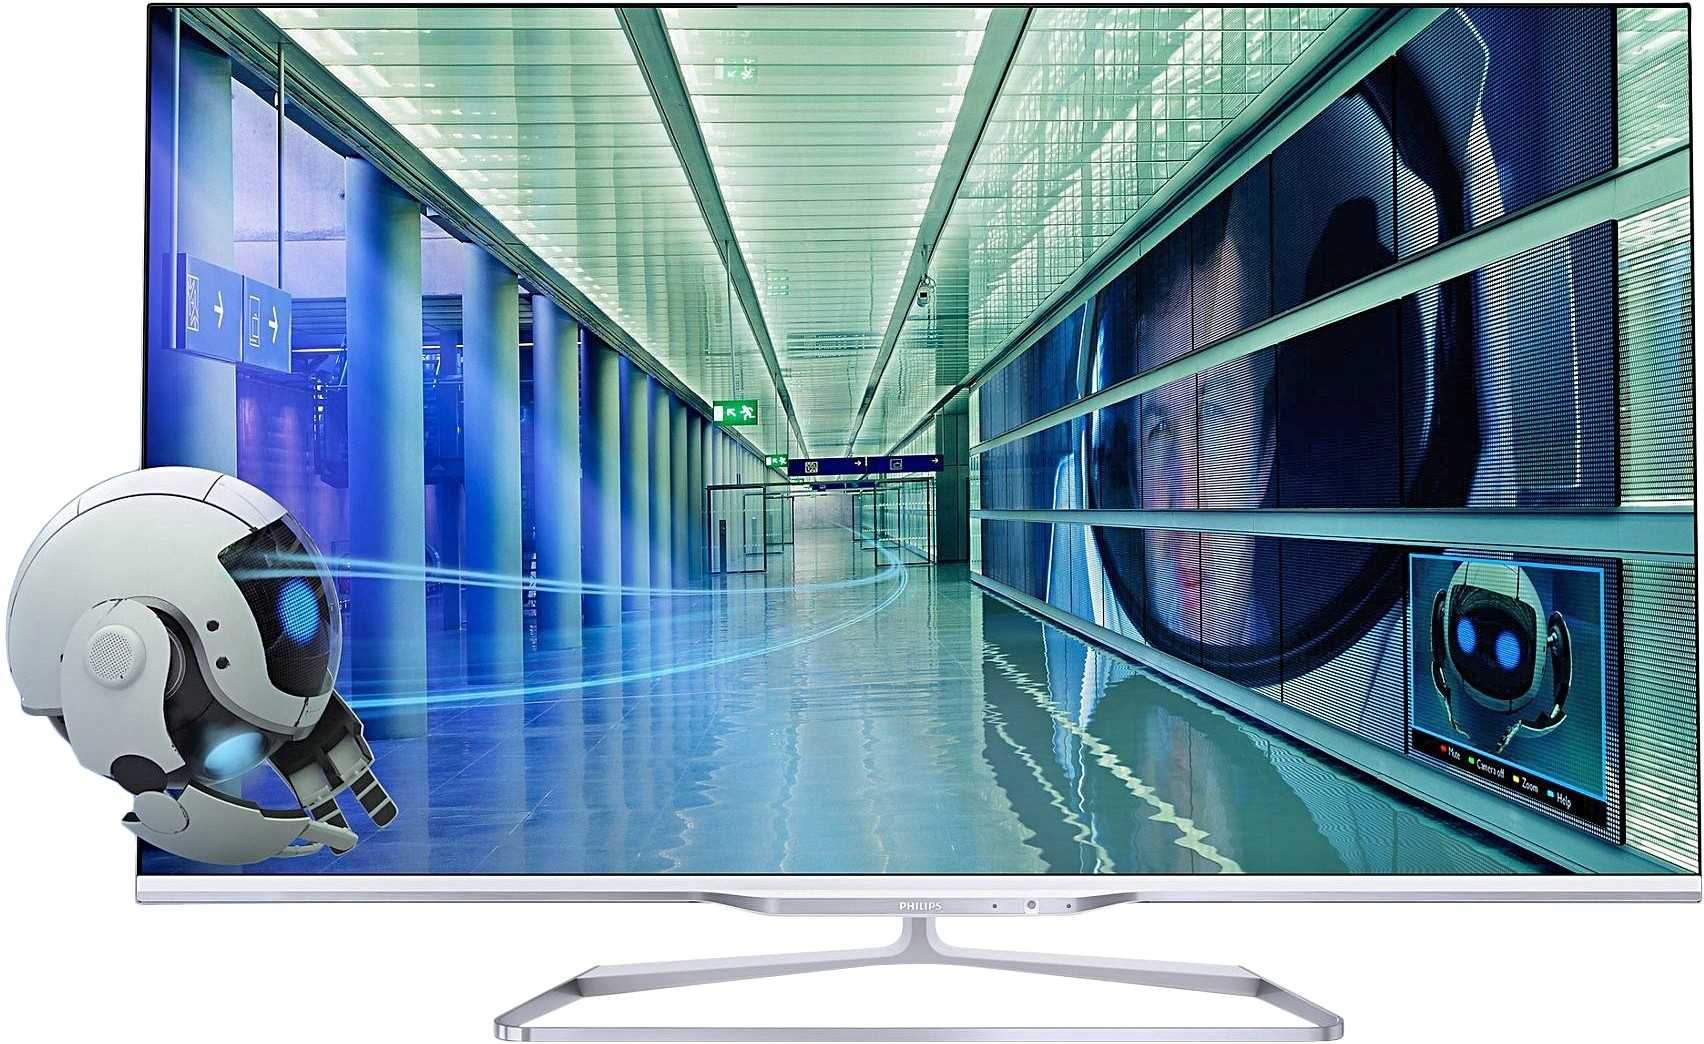 Телевизор Philips 47PFL7108K - подробные характеристики обзоры видео фото Цены в интернет-магазинах где можно купить телевизор Philips 47PFL7108K